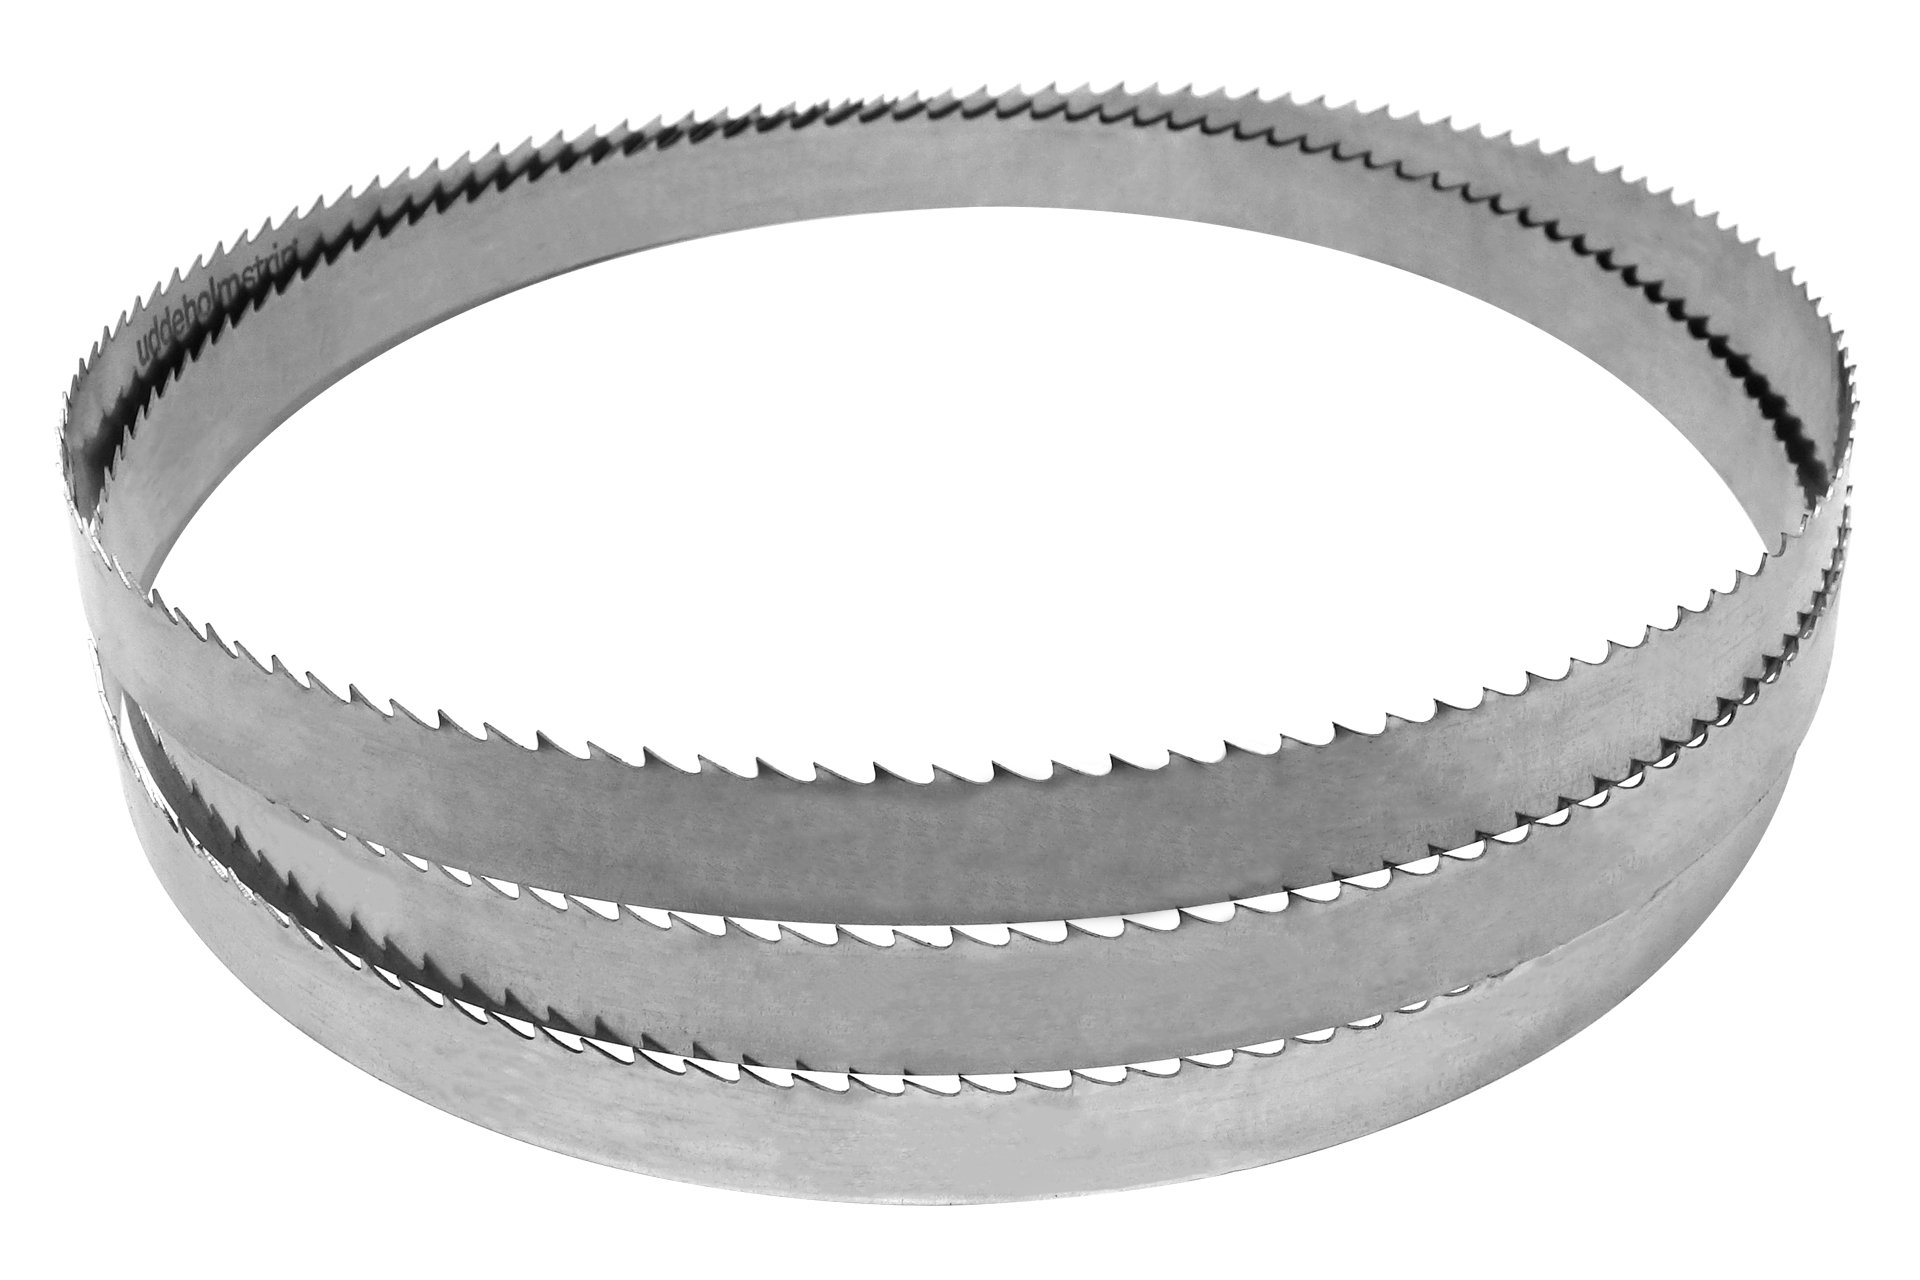 Sägeband aus Uddeholm-Stahl für MJ14, 2560 x 25 x 0,5 mm, 4 Zpz